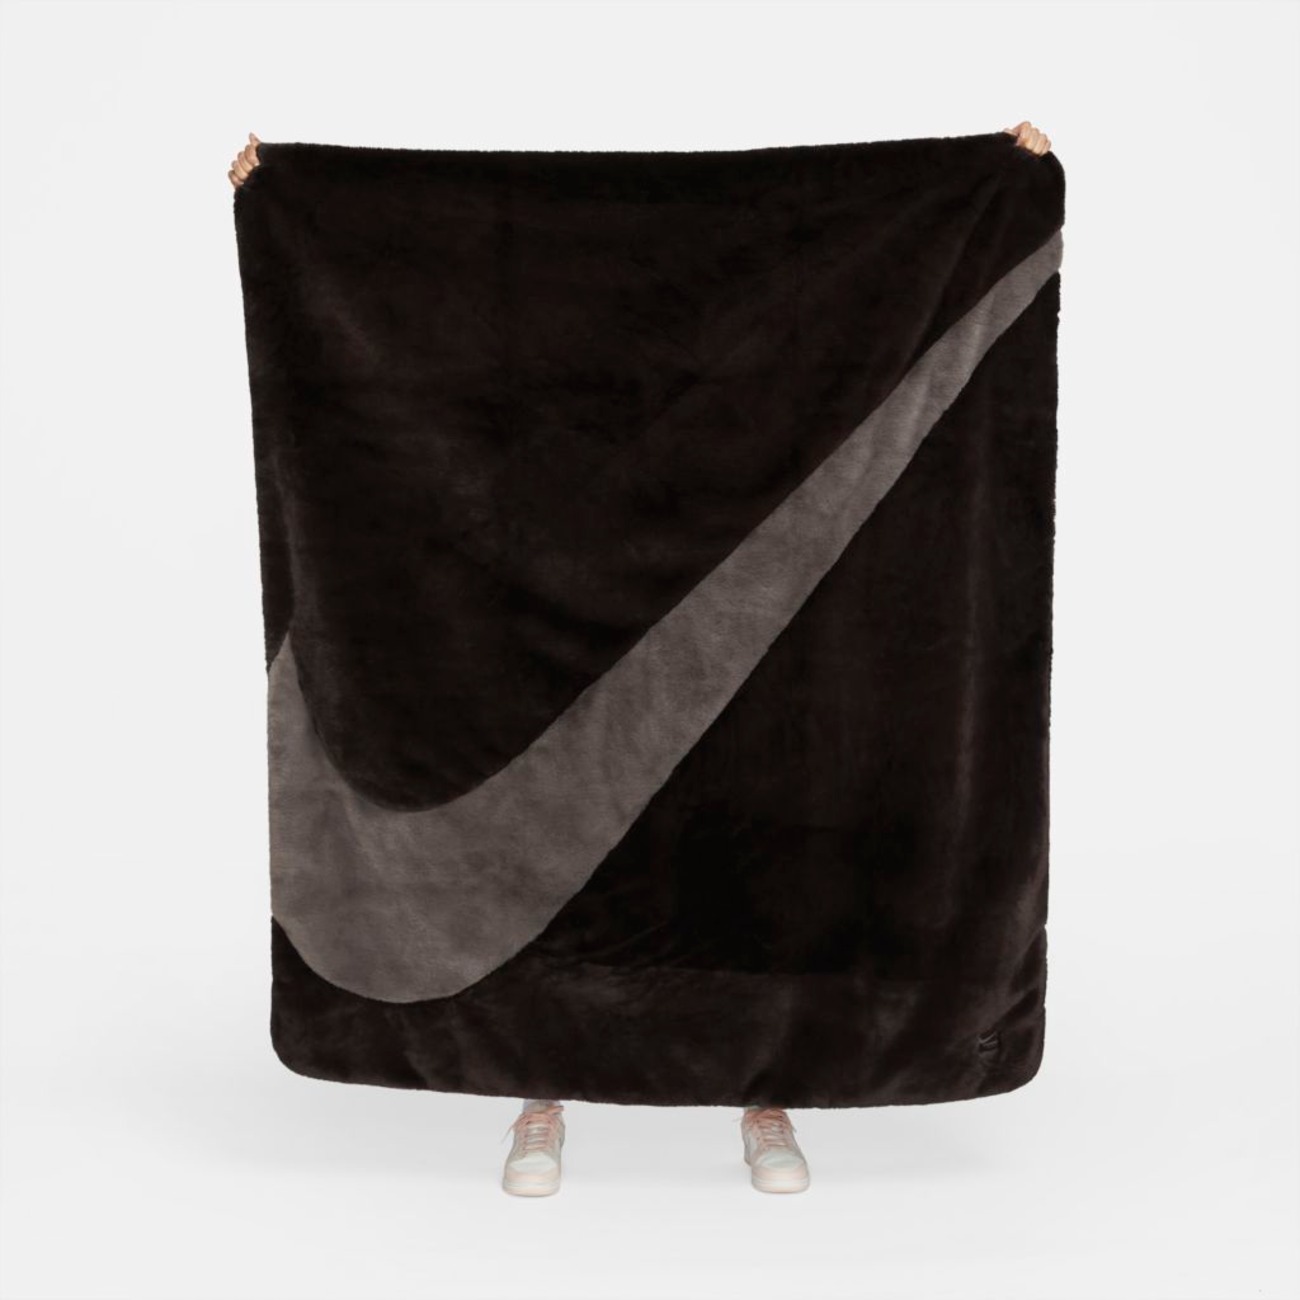 Cobertor Nike Sportswear Feminino - Foto 10